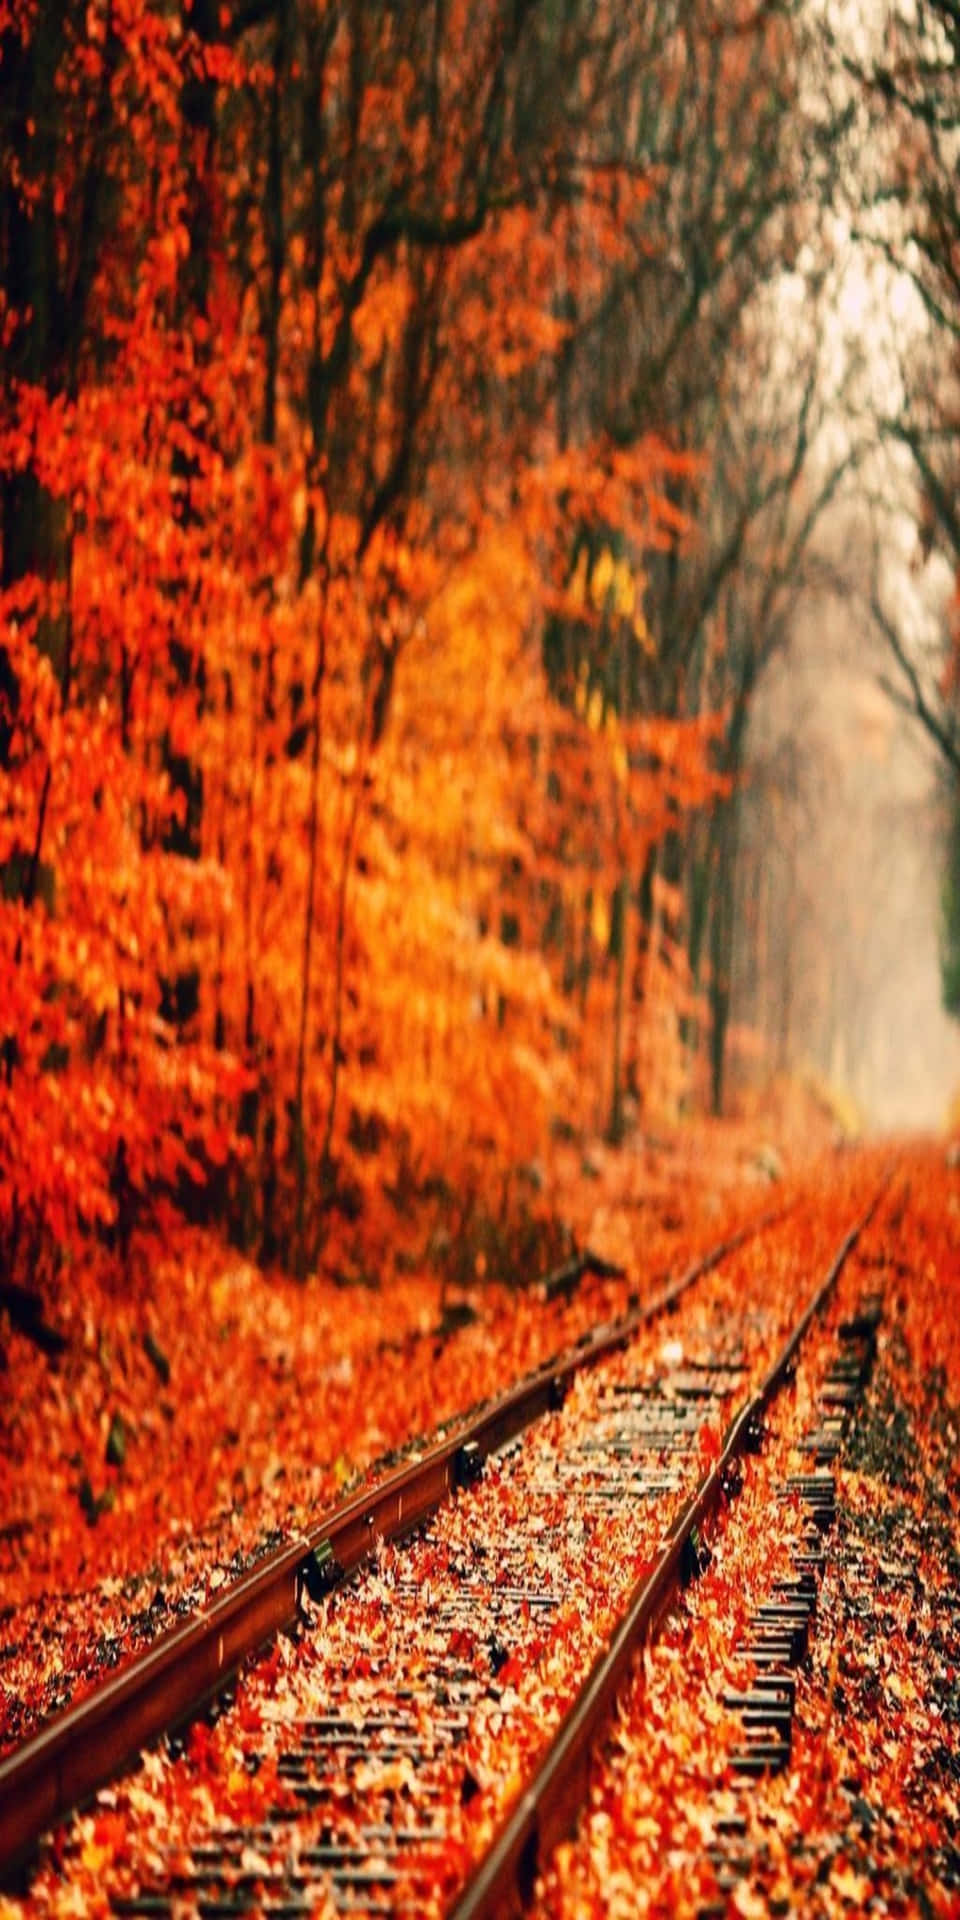 Pixel3 Herbst Hintergrund Mit Orangefarbenen Pflanzen, Die Eine Zugstrecke Umgeben.